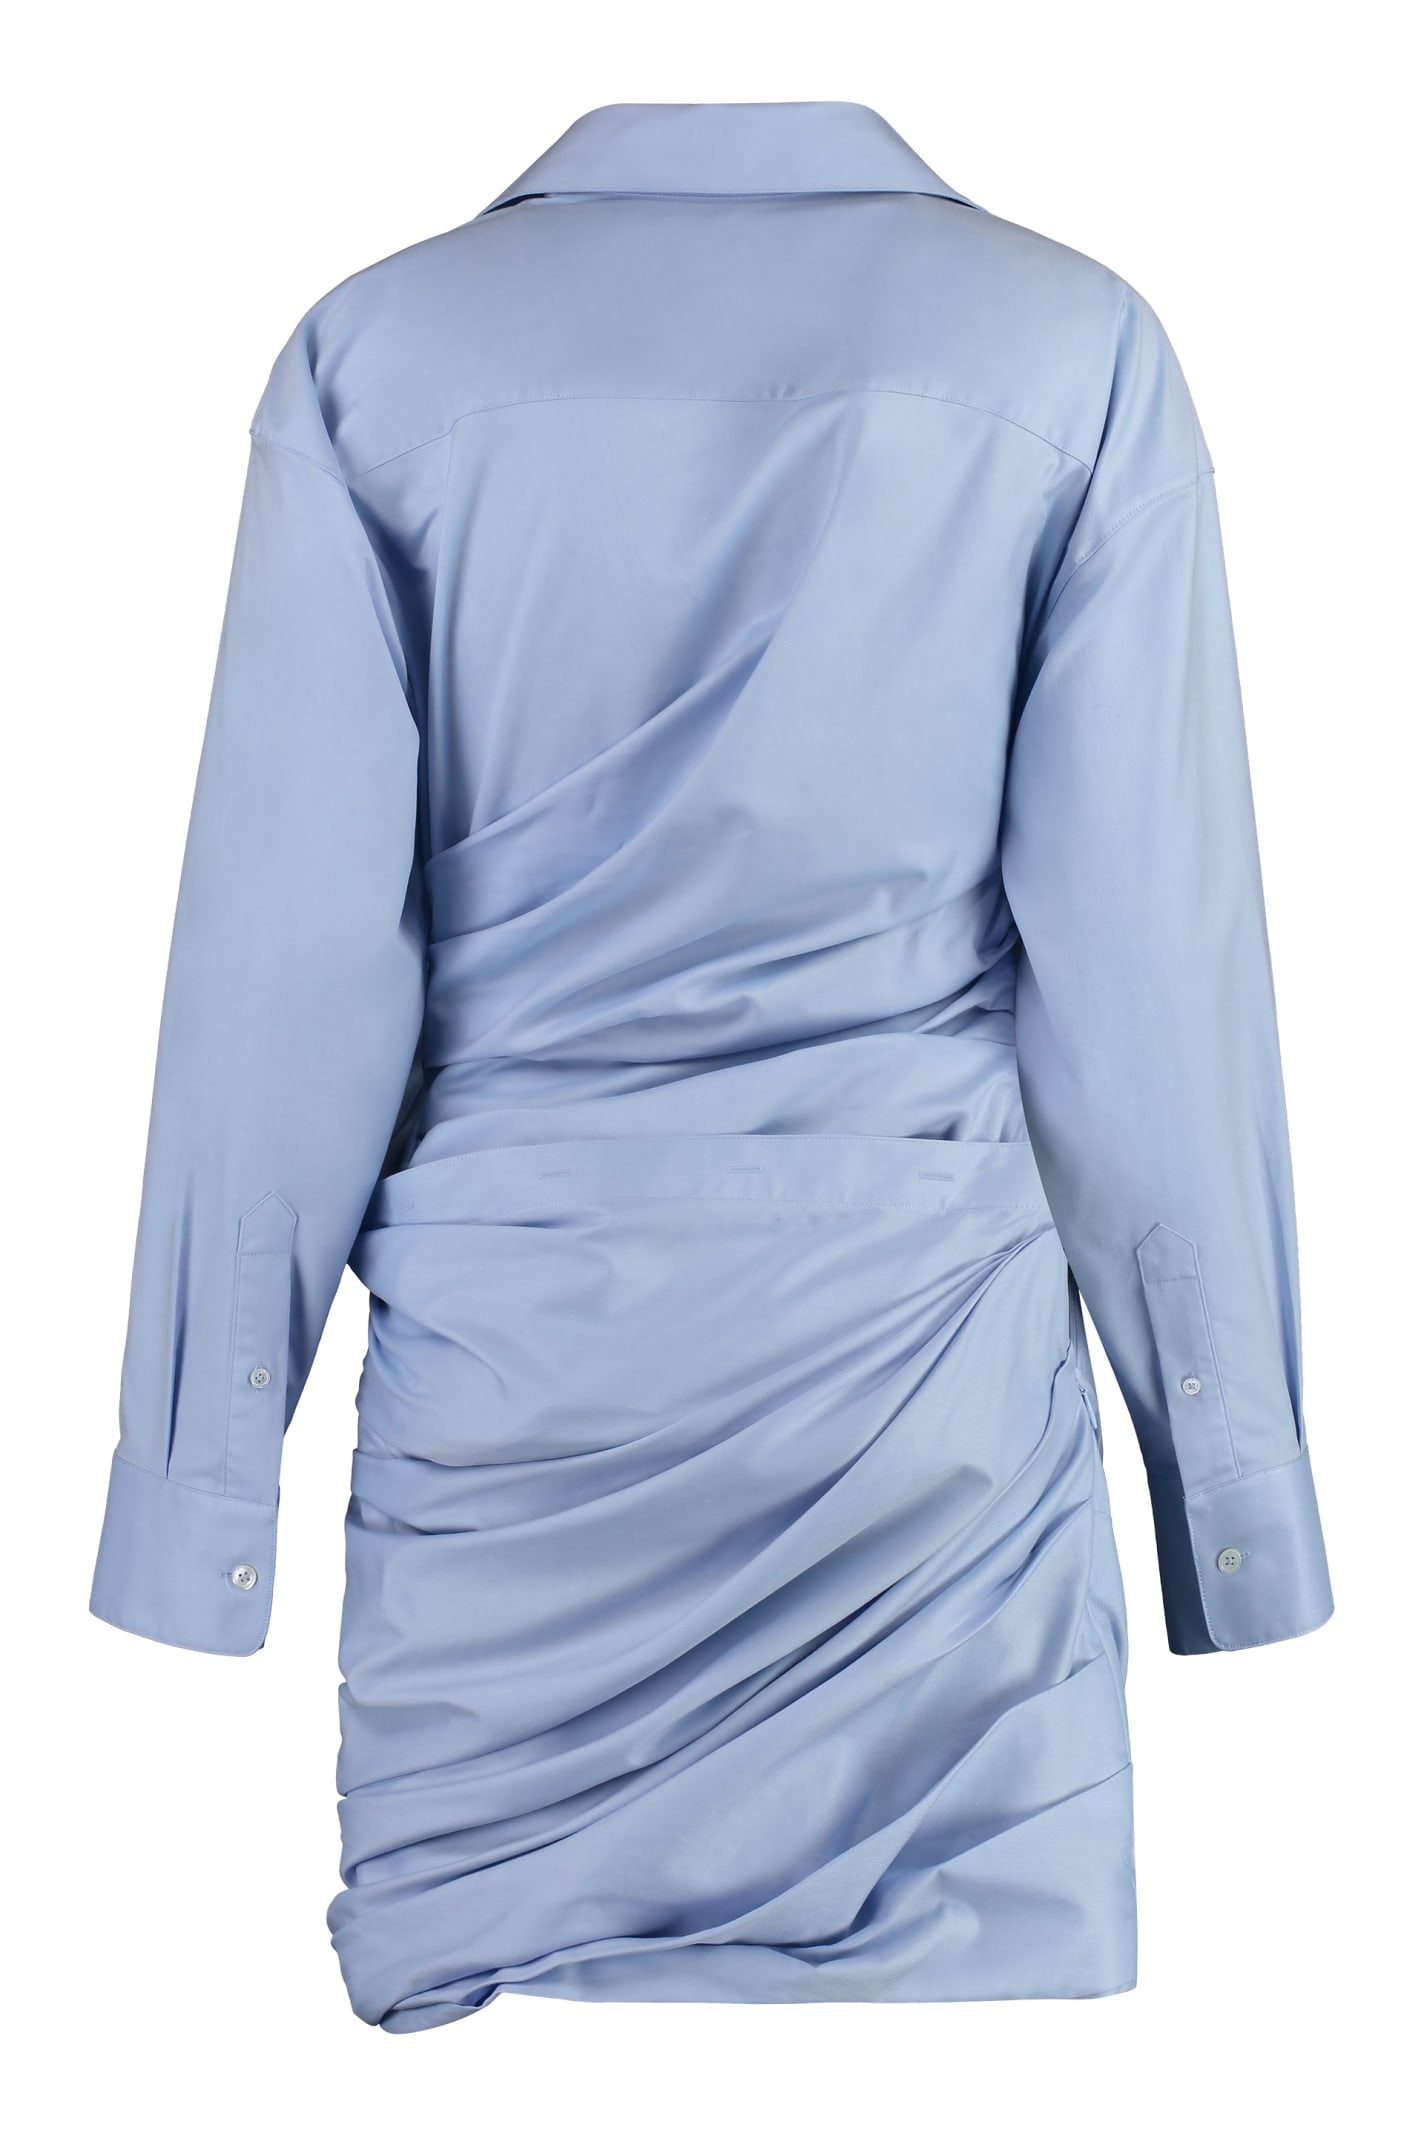 Shop Alexander Wang Cotton Mini-dress In Light Blue